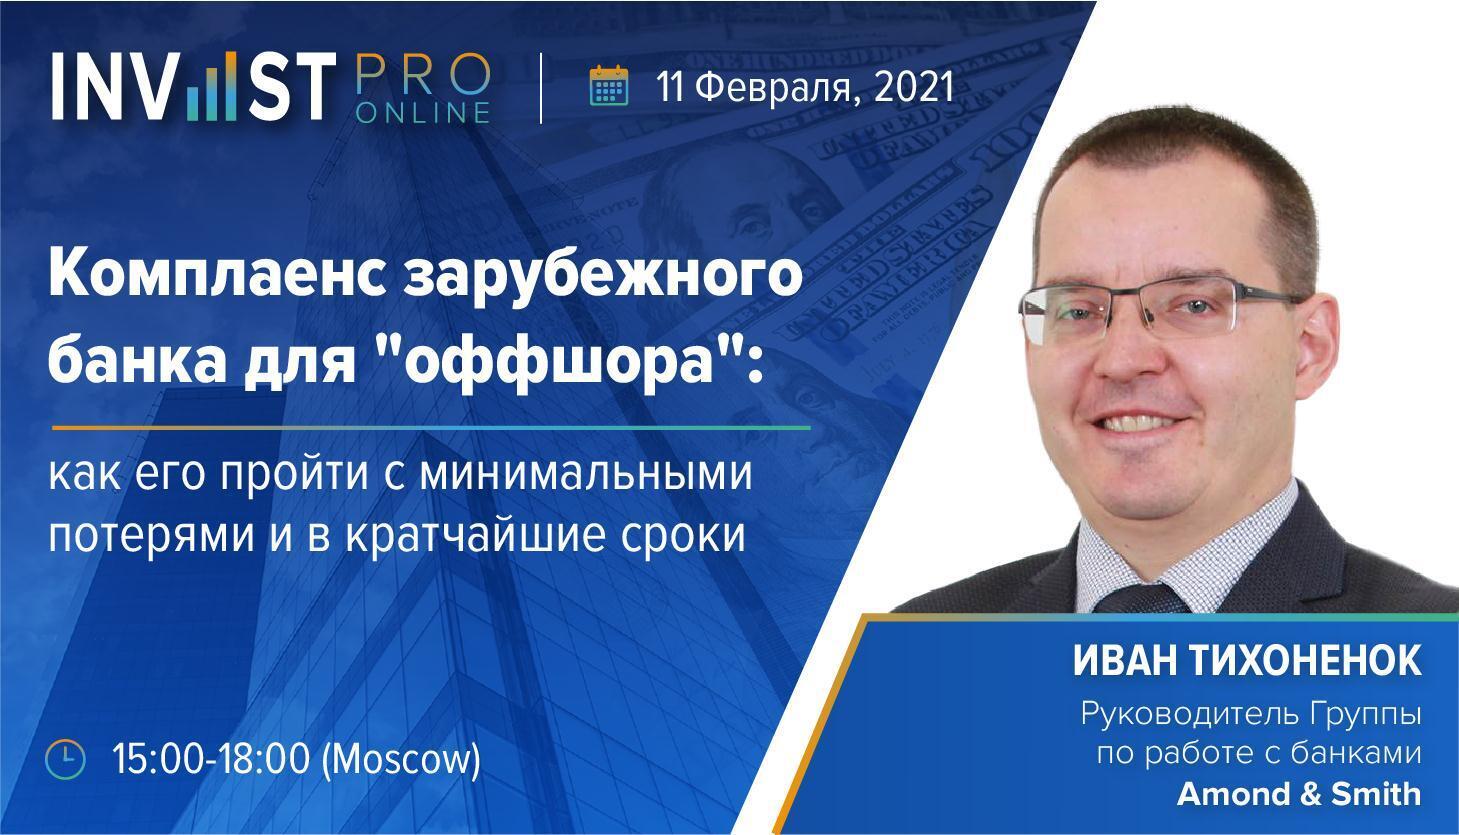 Руководитель Группы по работе с банками нашей компании Иван Тихоненок 11 февраля выступил на конференции InvestPro Online от Bosco Conference 